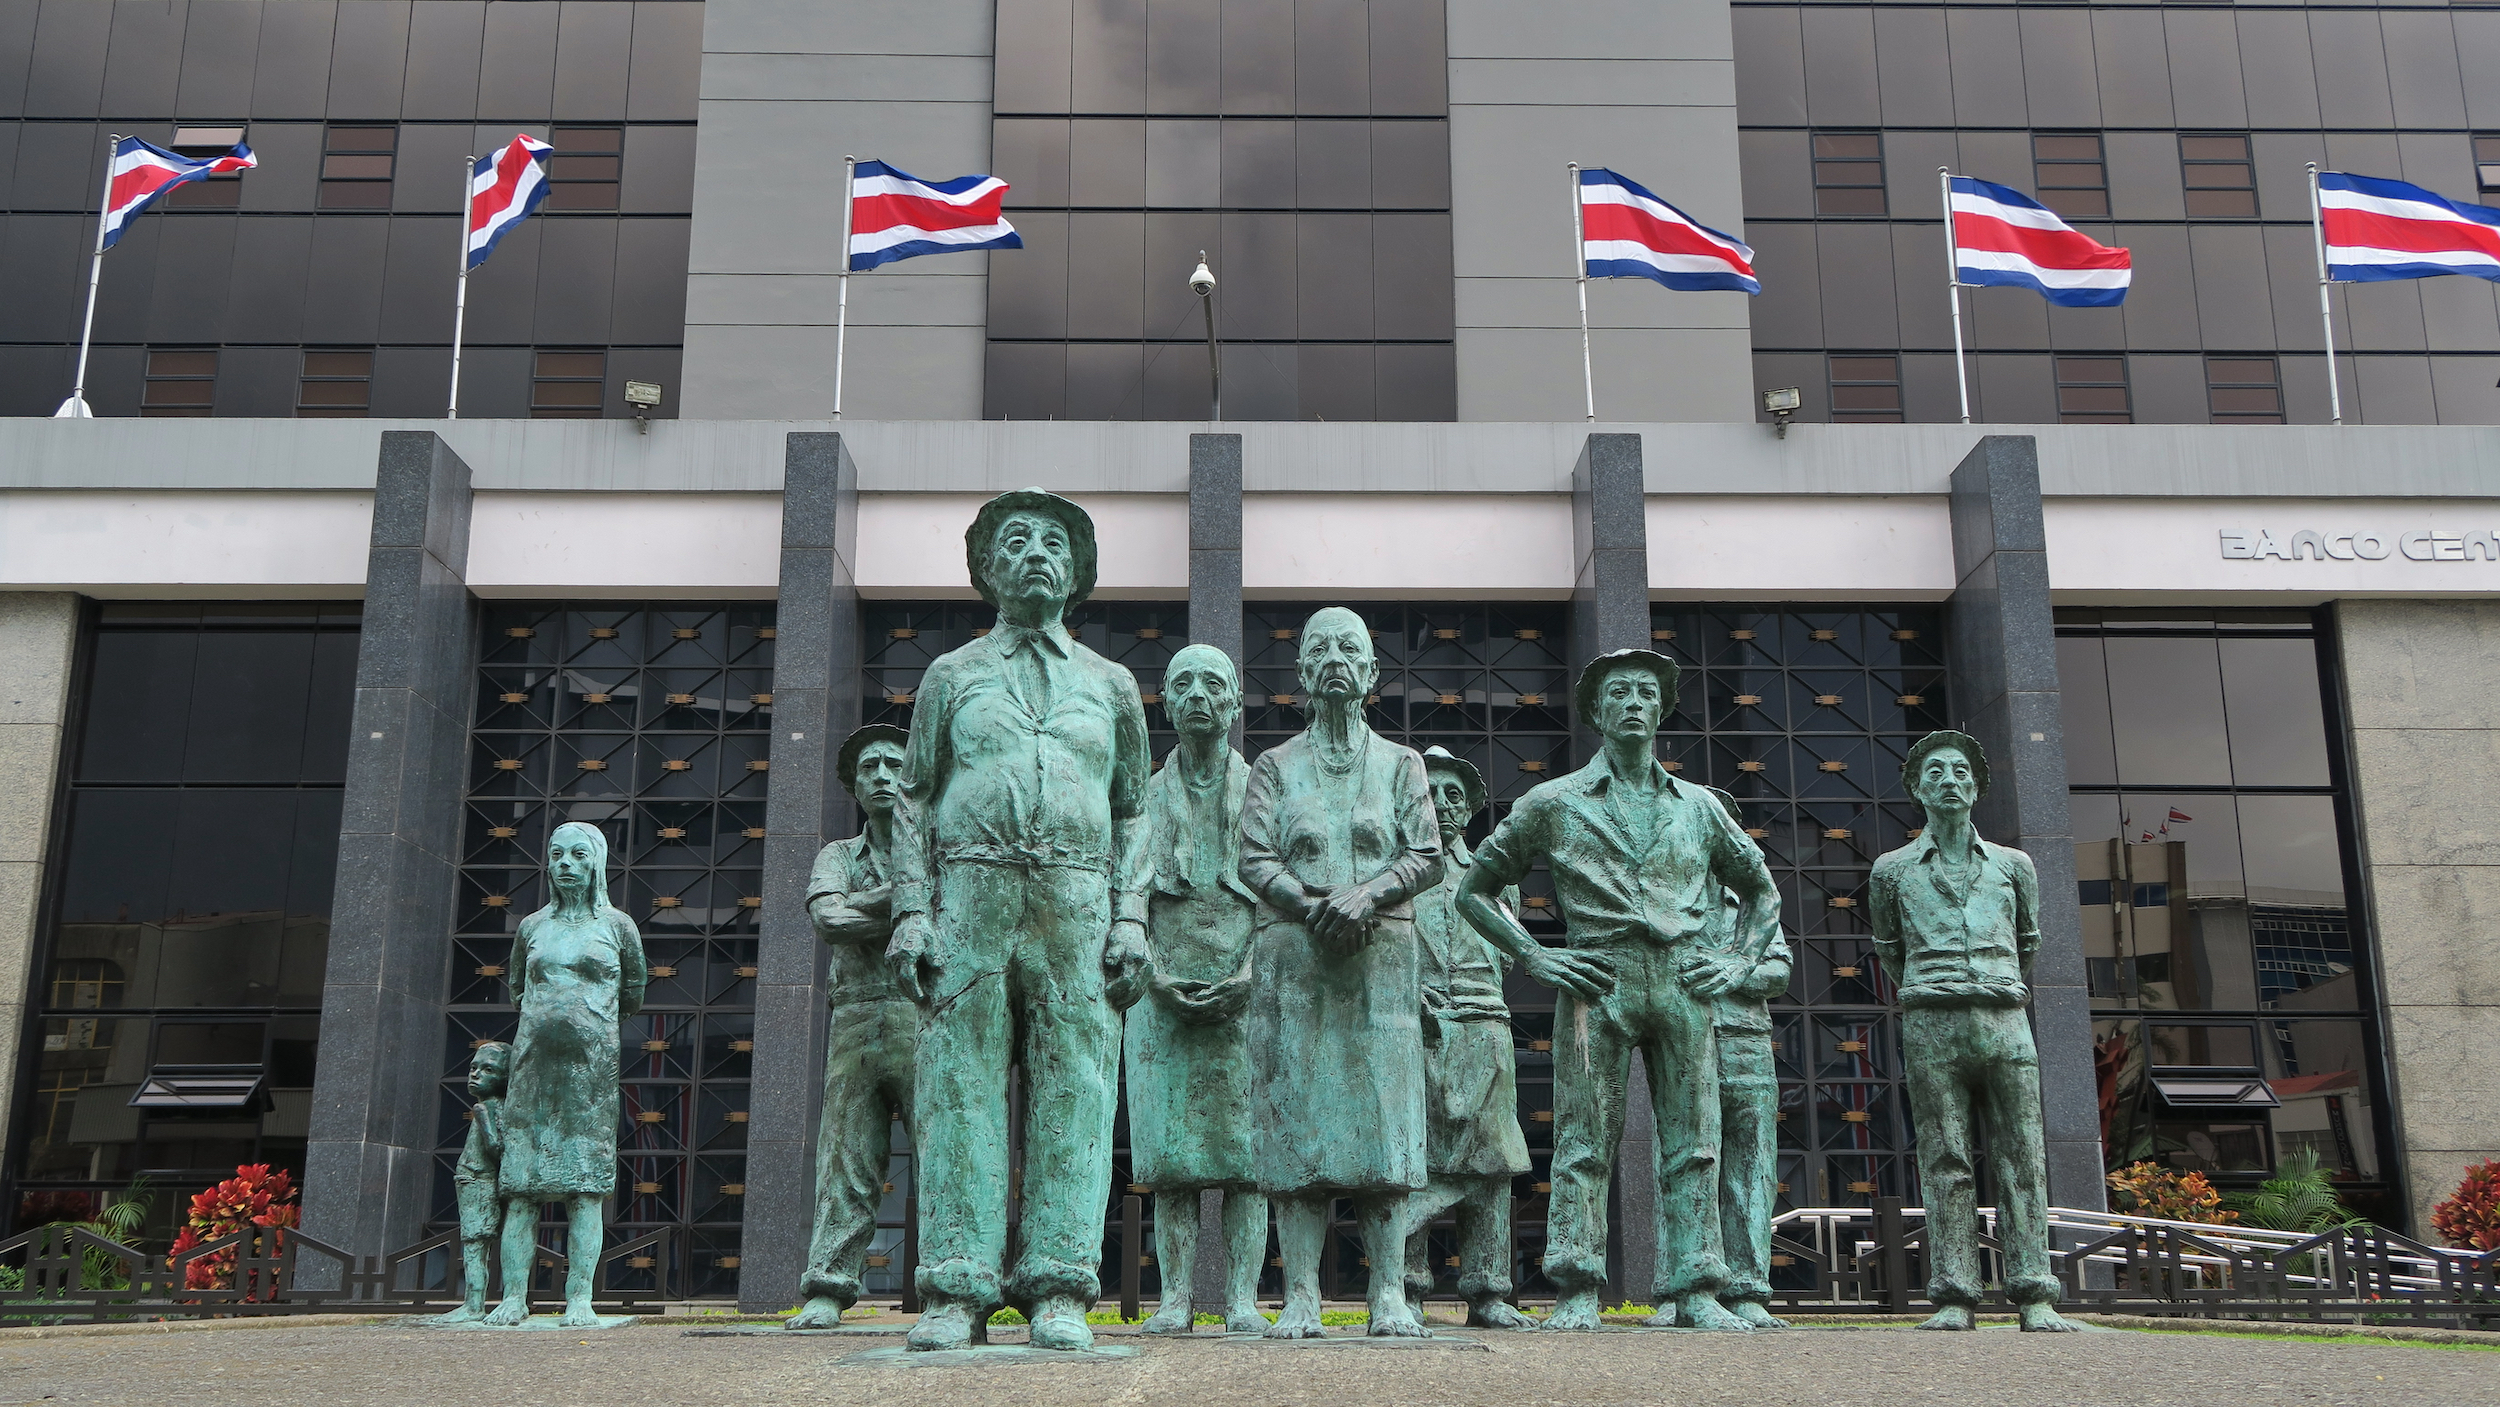 Una estatua de gente común frente a un edificio alto y moderno